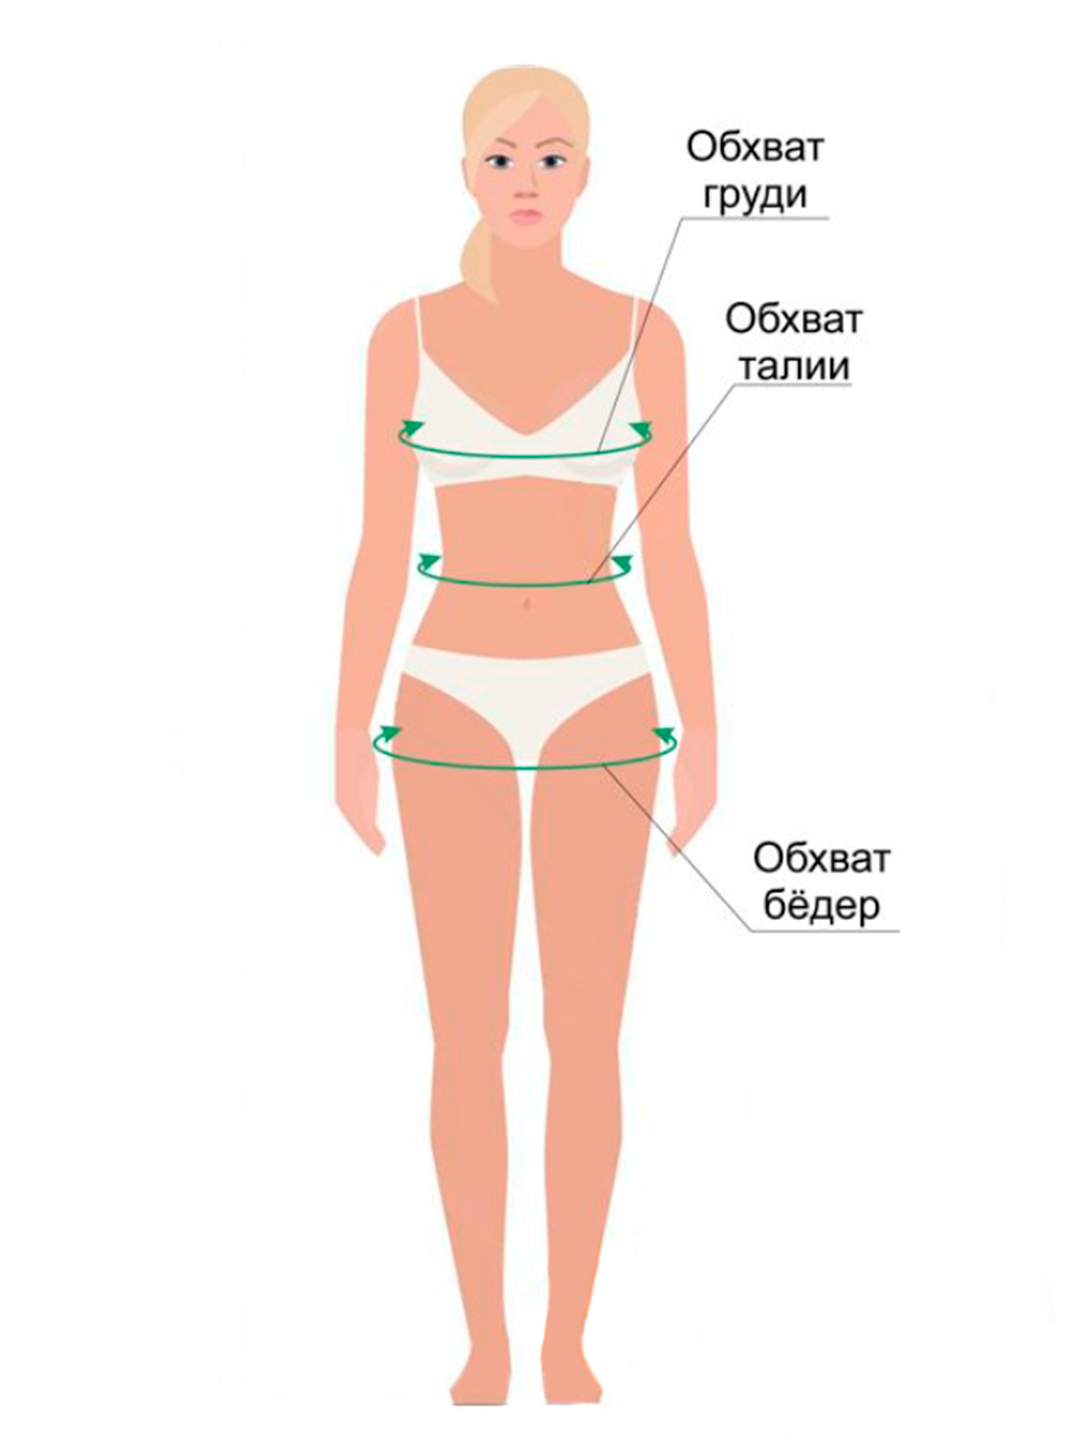 правильно измерить обхват груди женщин фото 76